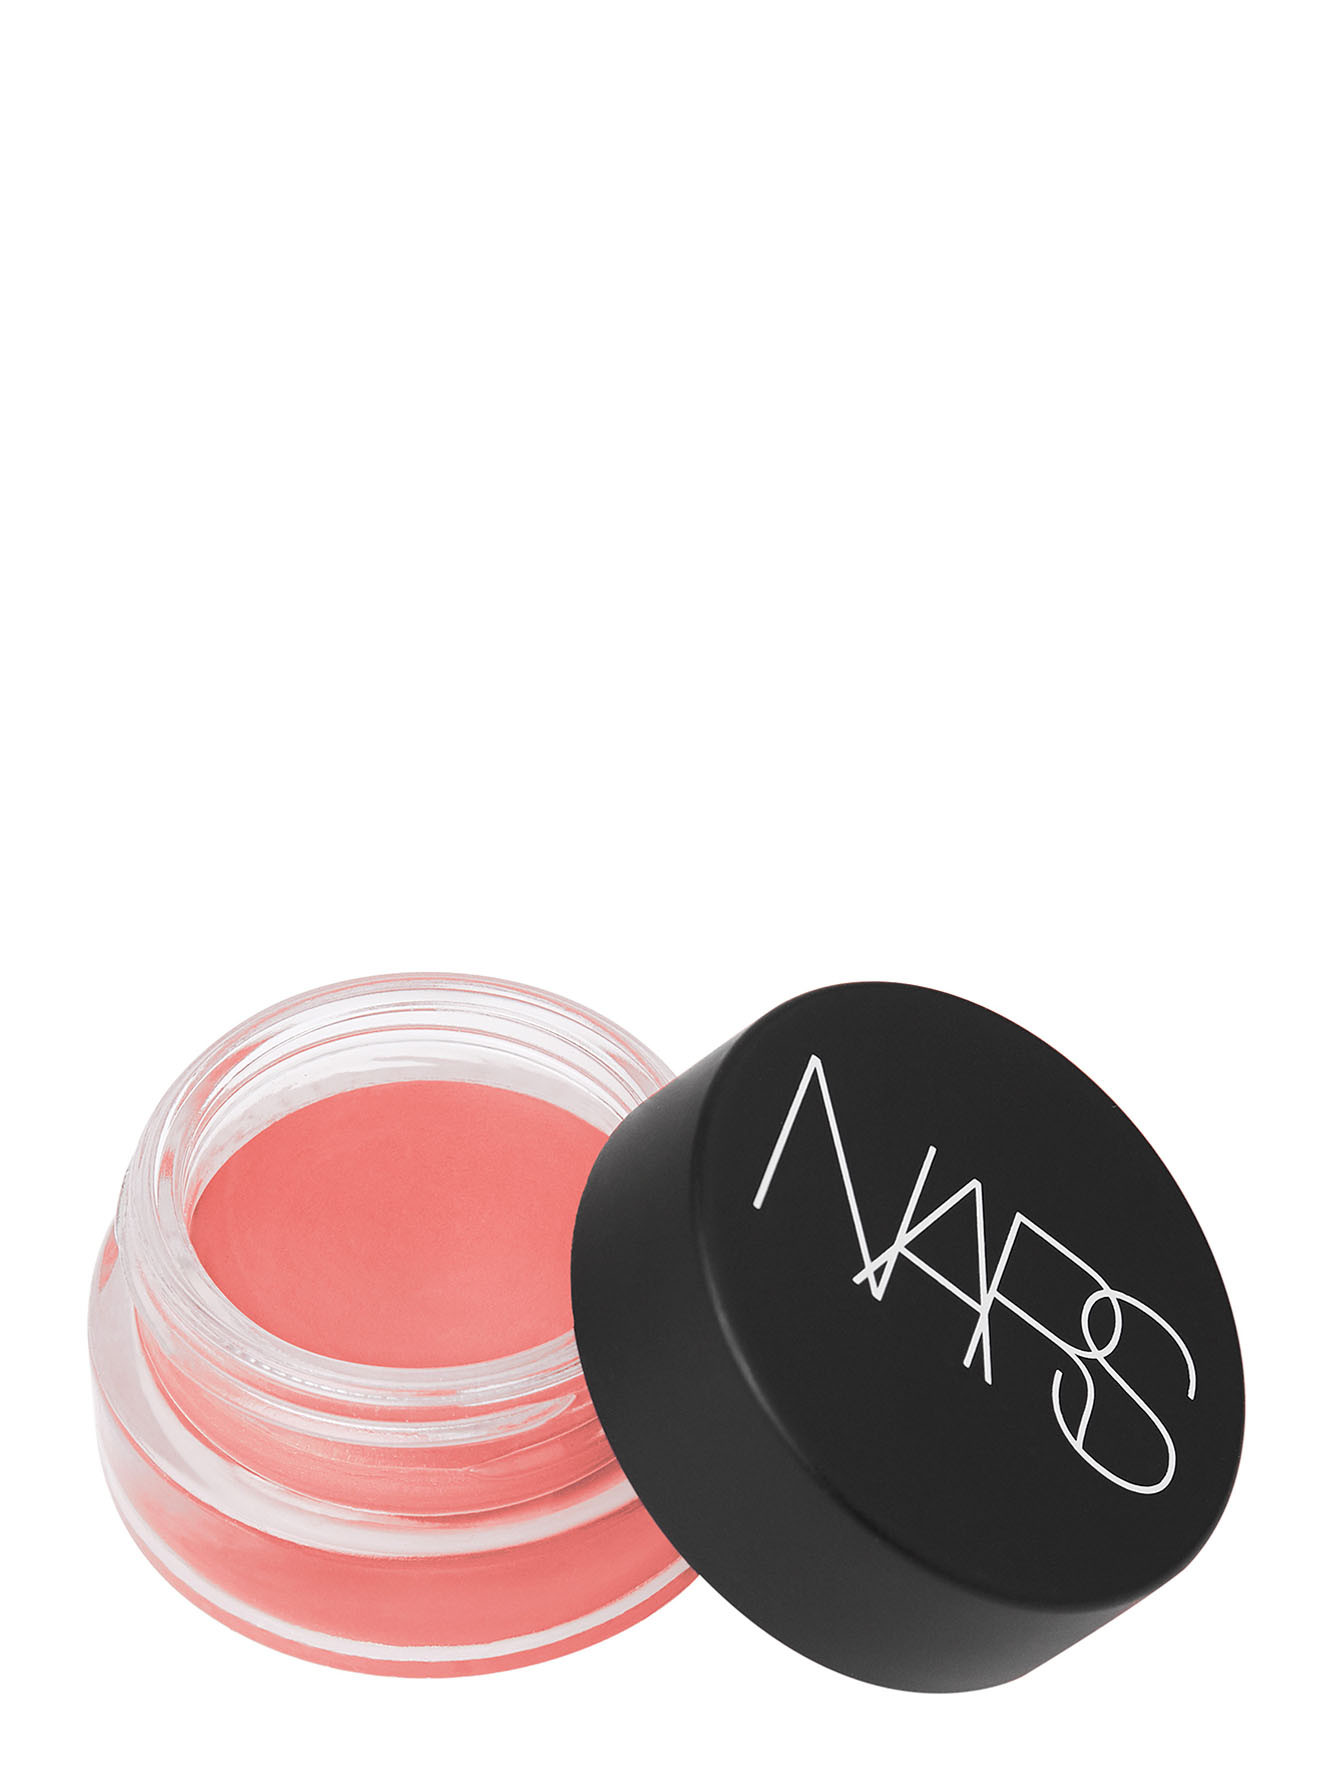  Кремовые румяна Air Matte Blush NARS Makeup - Общий вид